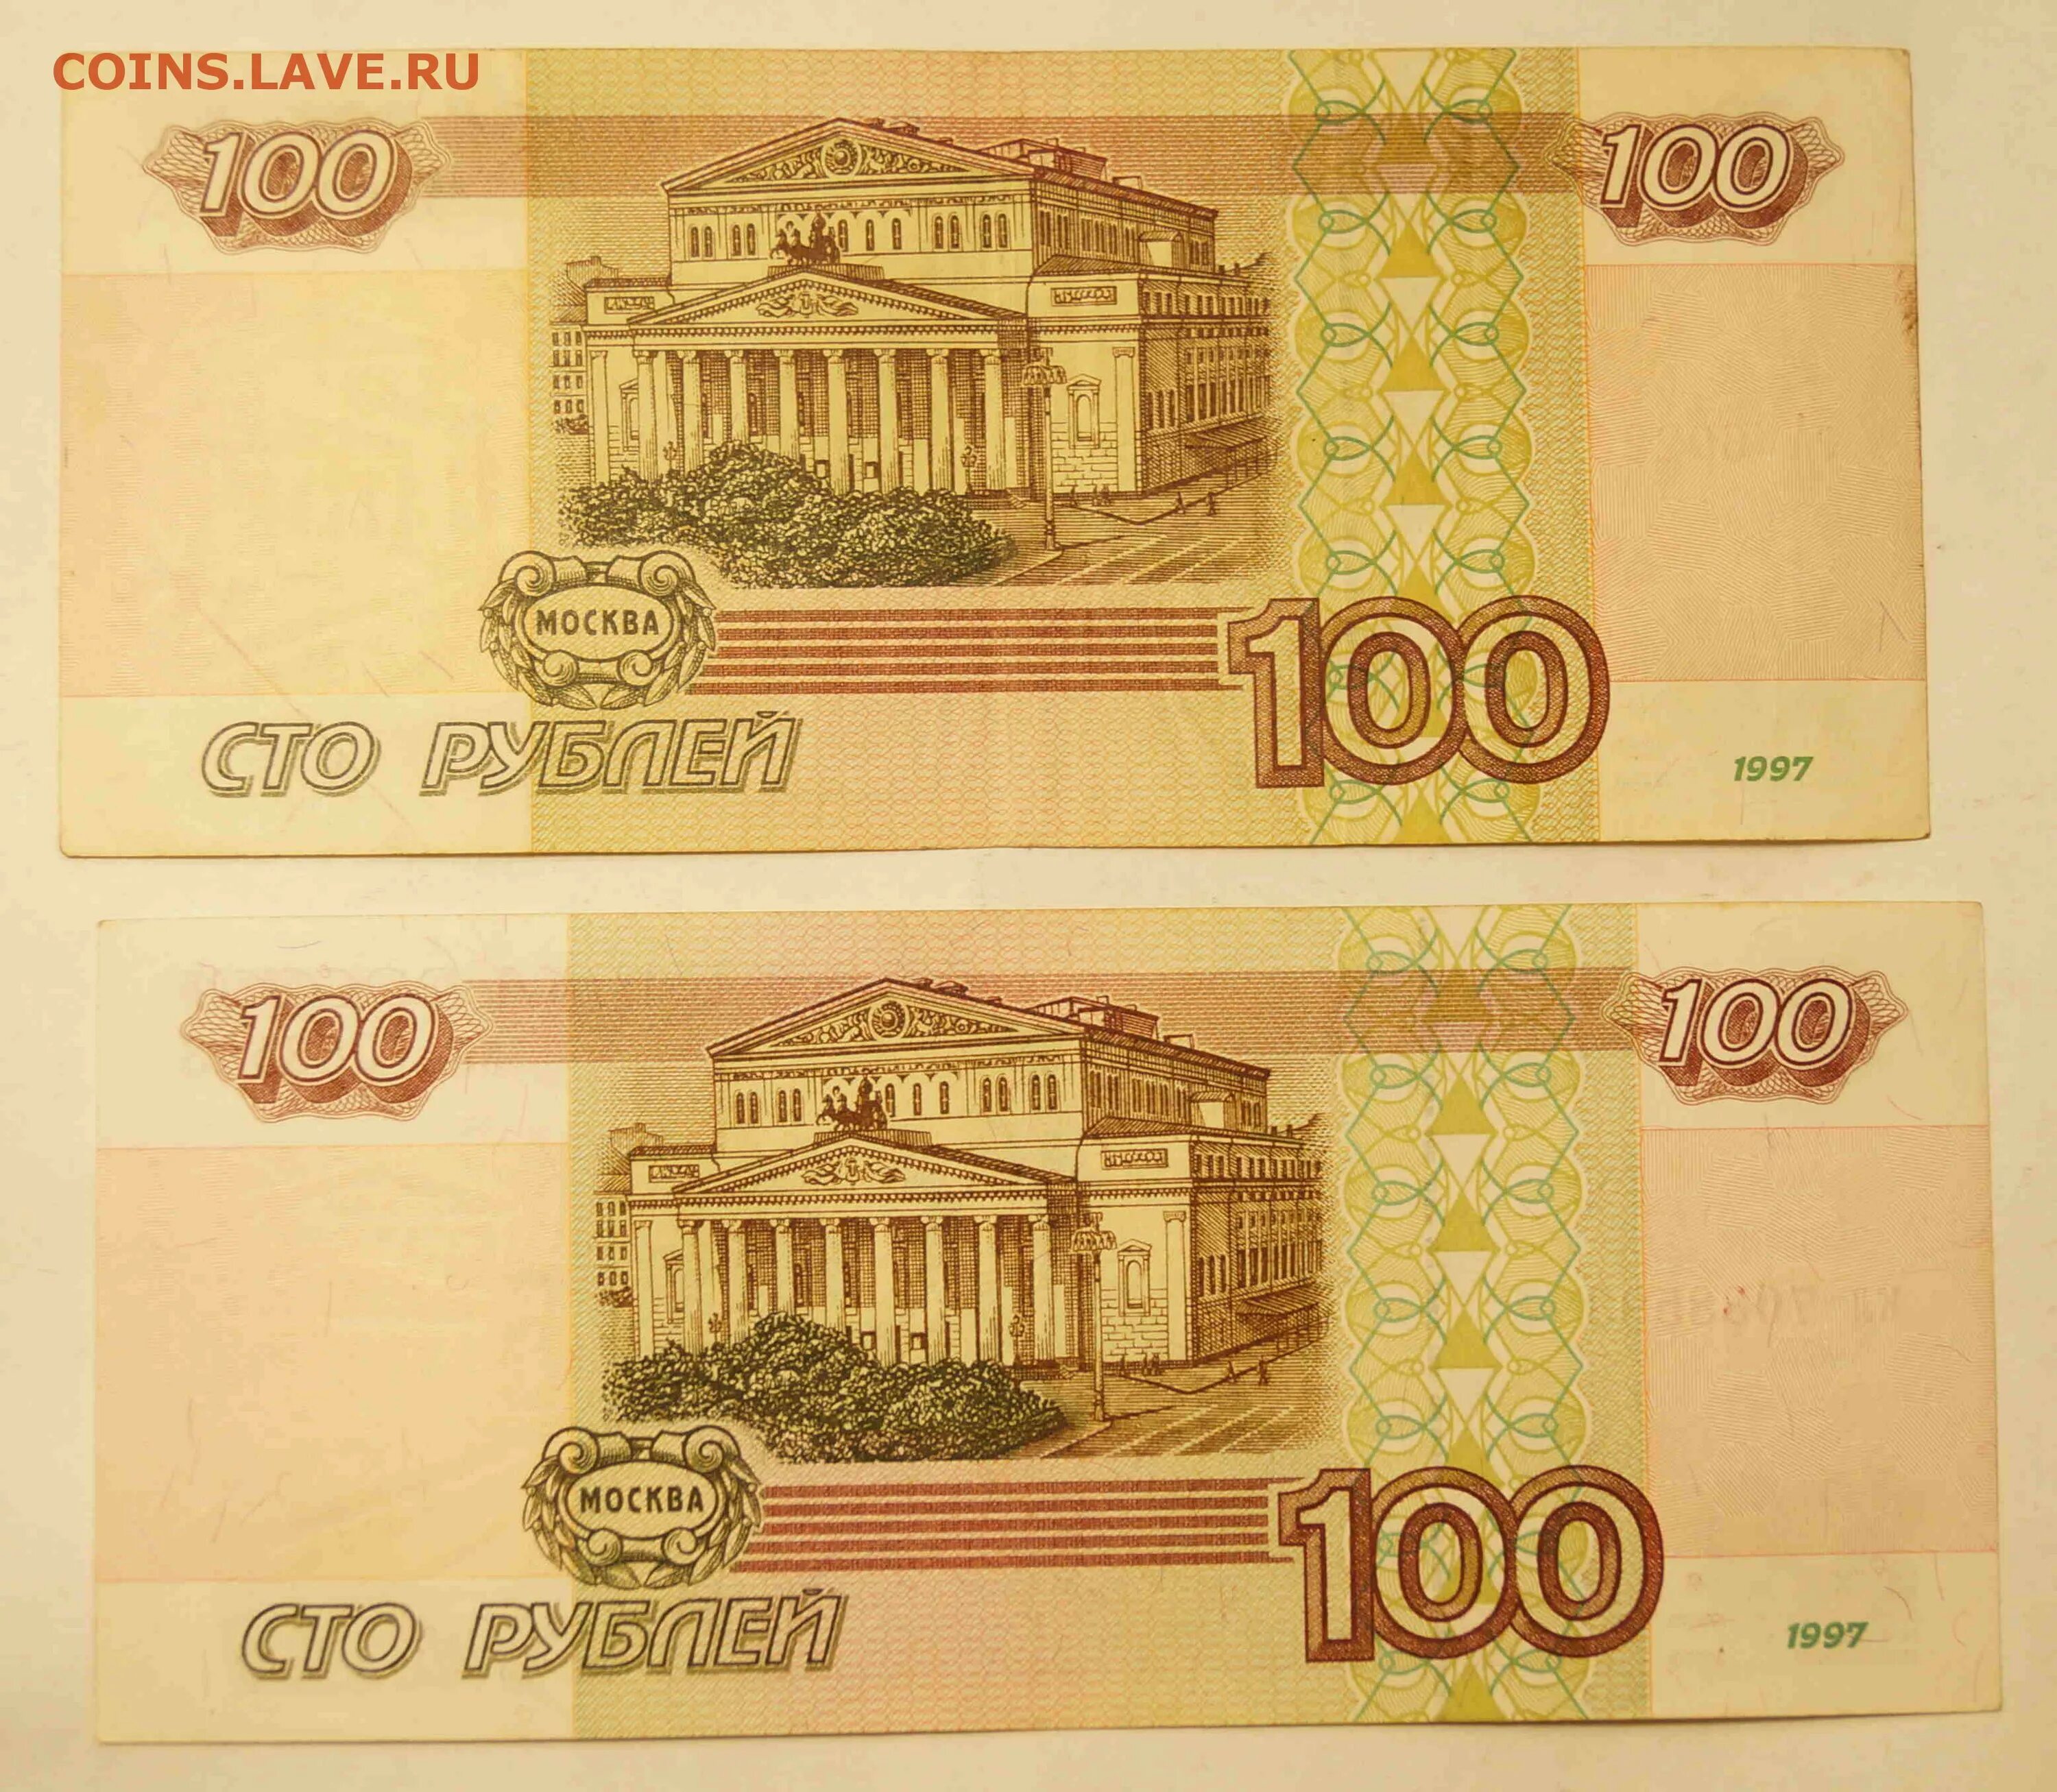 100000 0 1. Купюра 100 тысяч рублей 1995. СТО тысяч рублей купюра. 100 000 Рублей 1995 года. Купюра 100.000 руб.